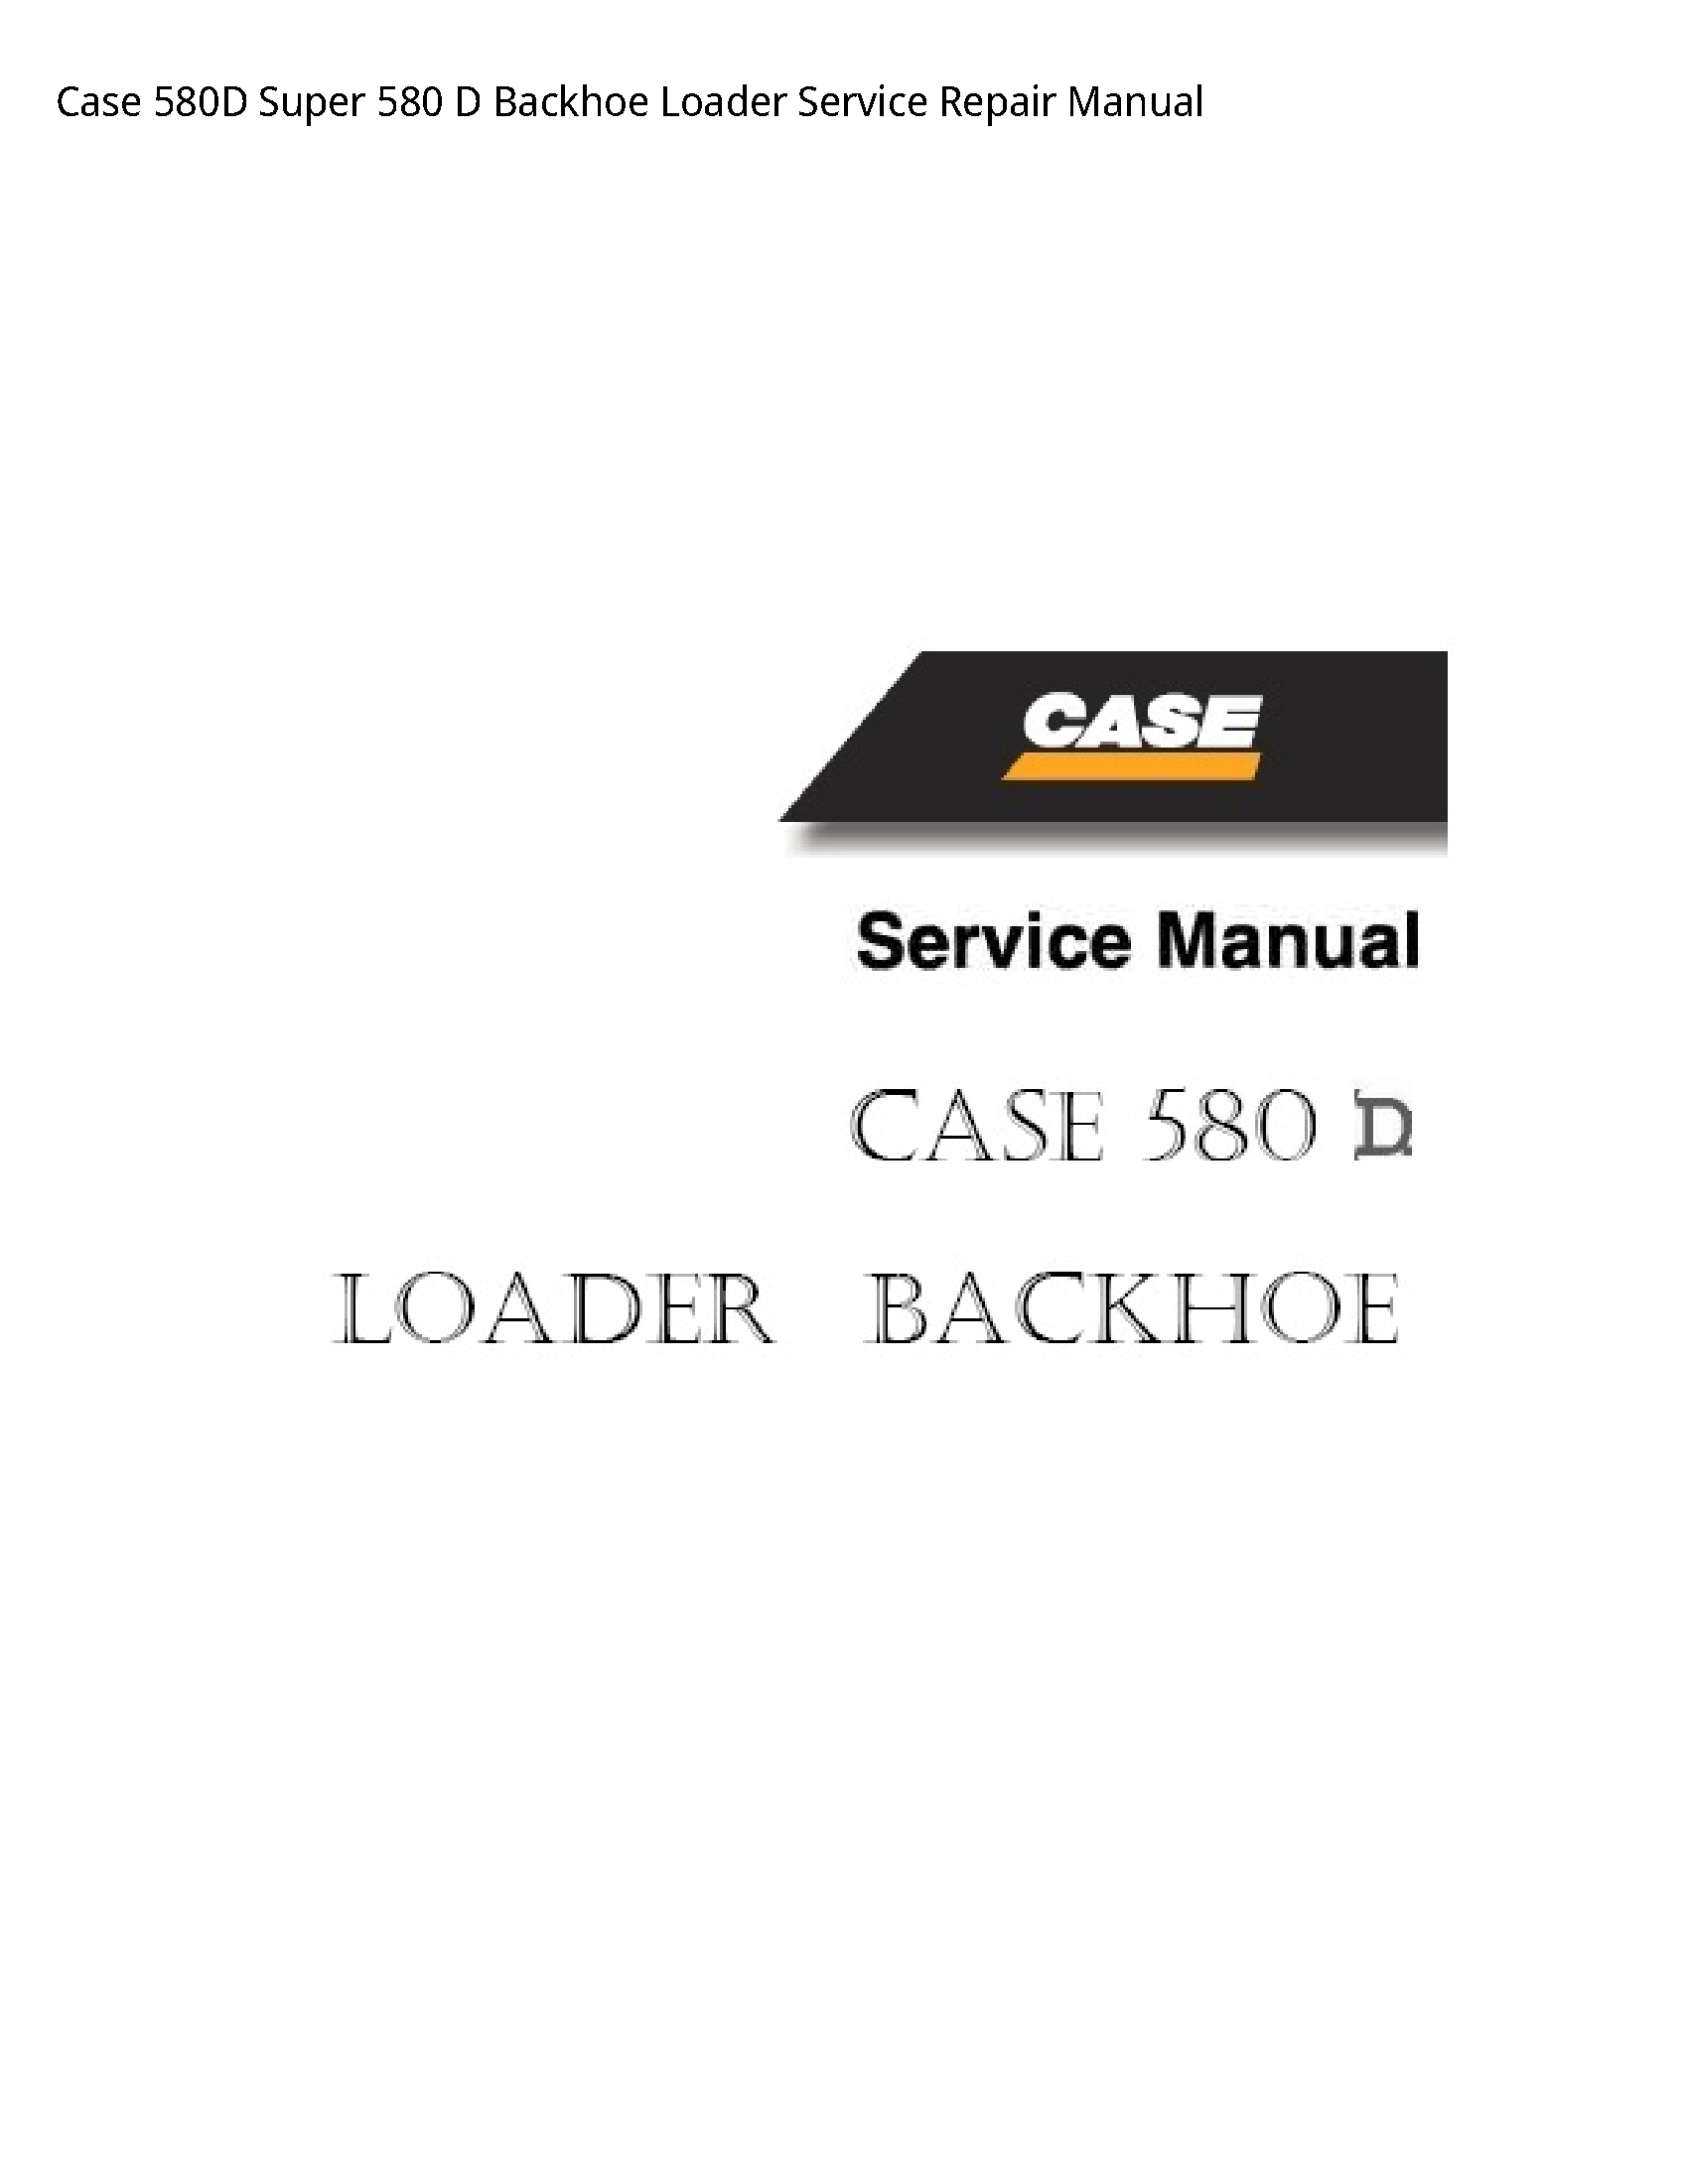 Case/Case IH 580D Super Backhoe Loader manual